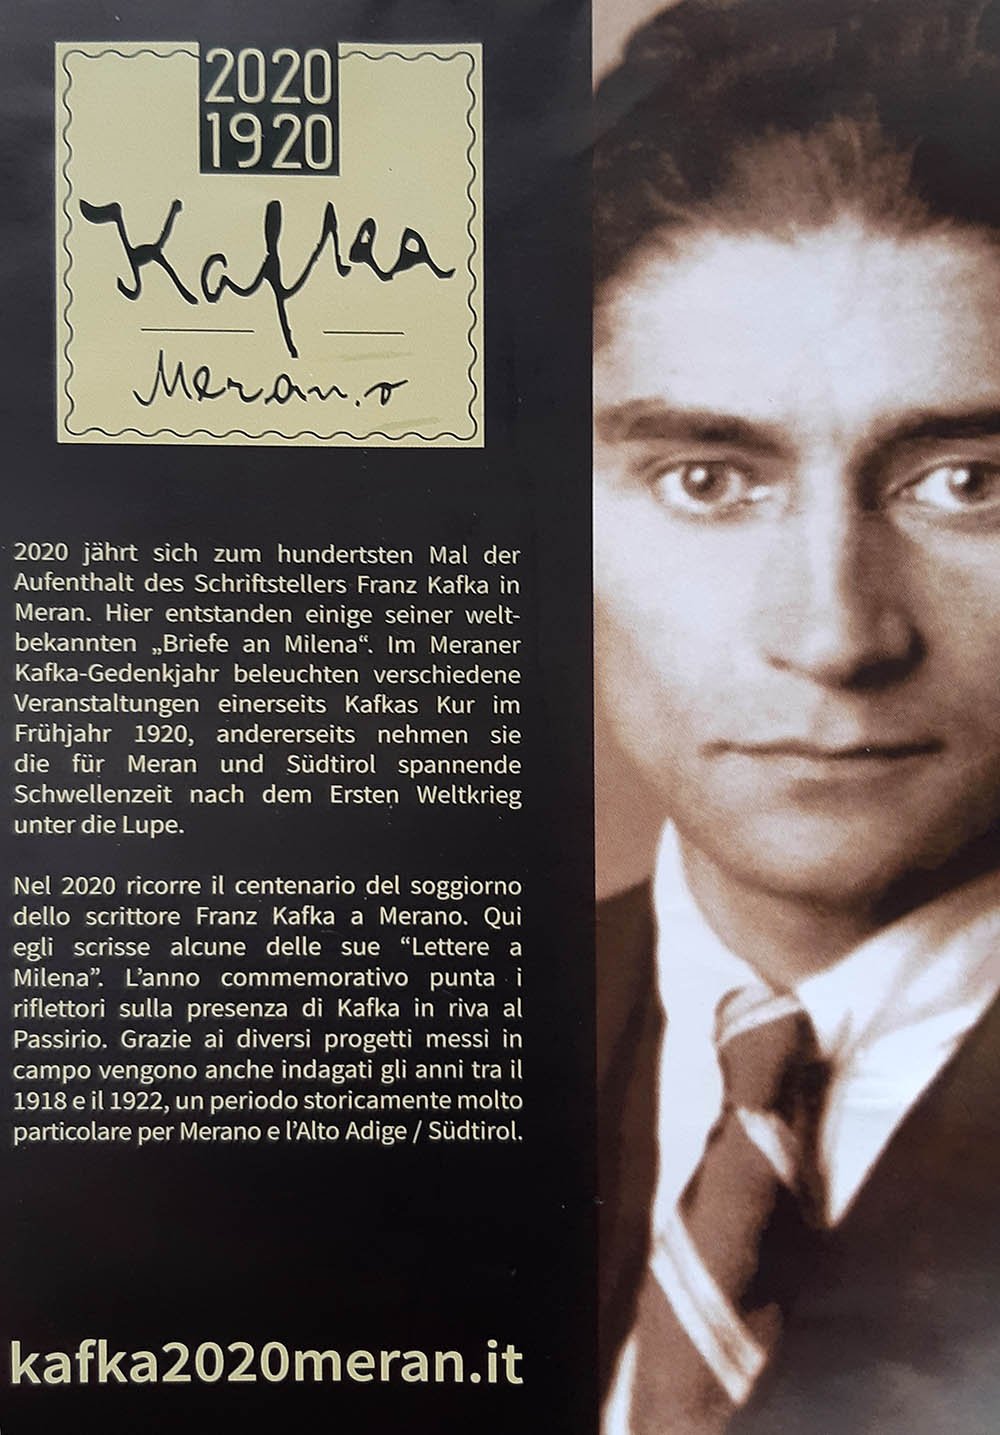 La mappa di Kafka